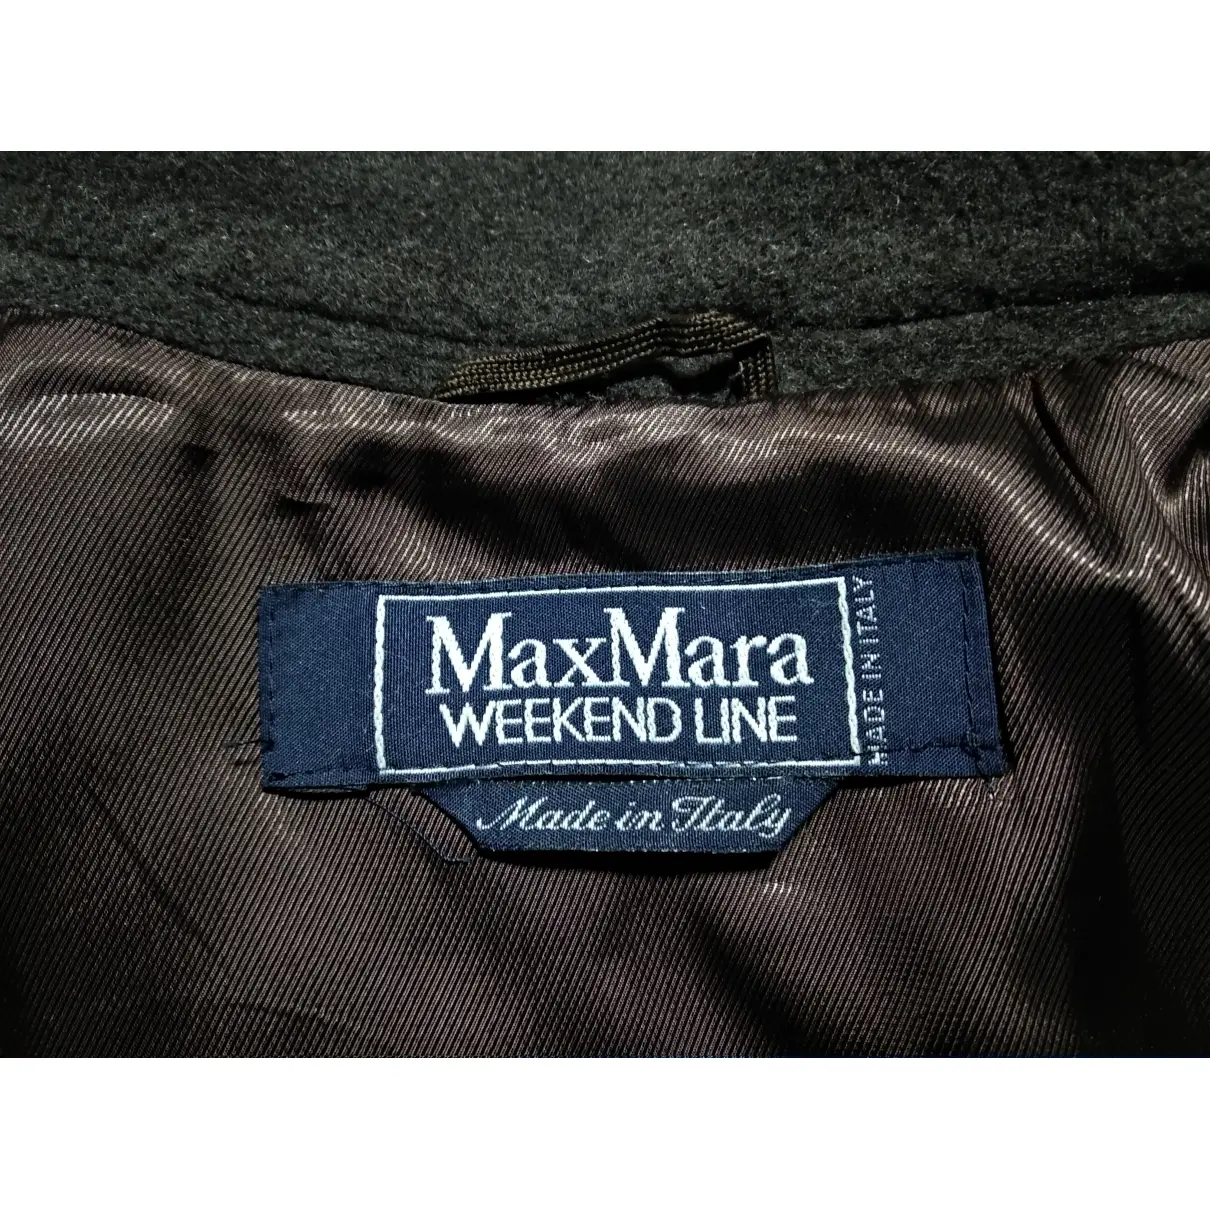 Wool coat Max Mara Weekend